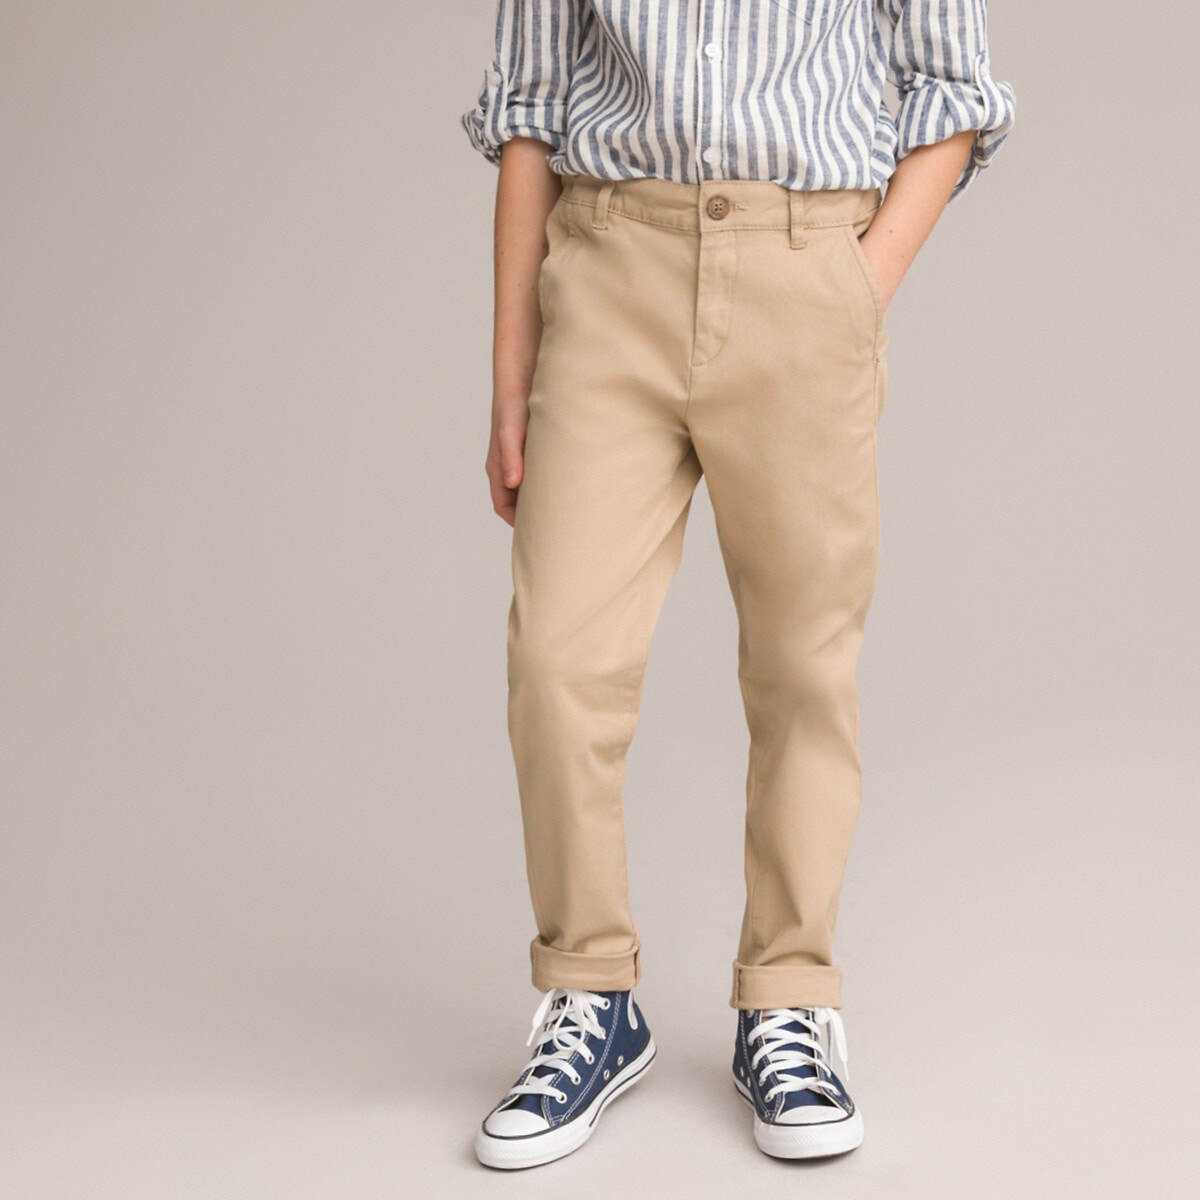 Παντελόνι με λοξές τσέπες, 3-12 ετών